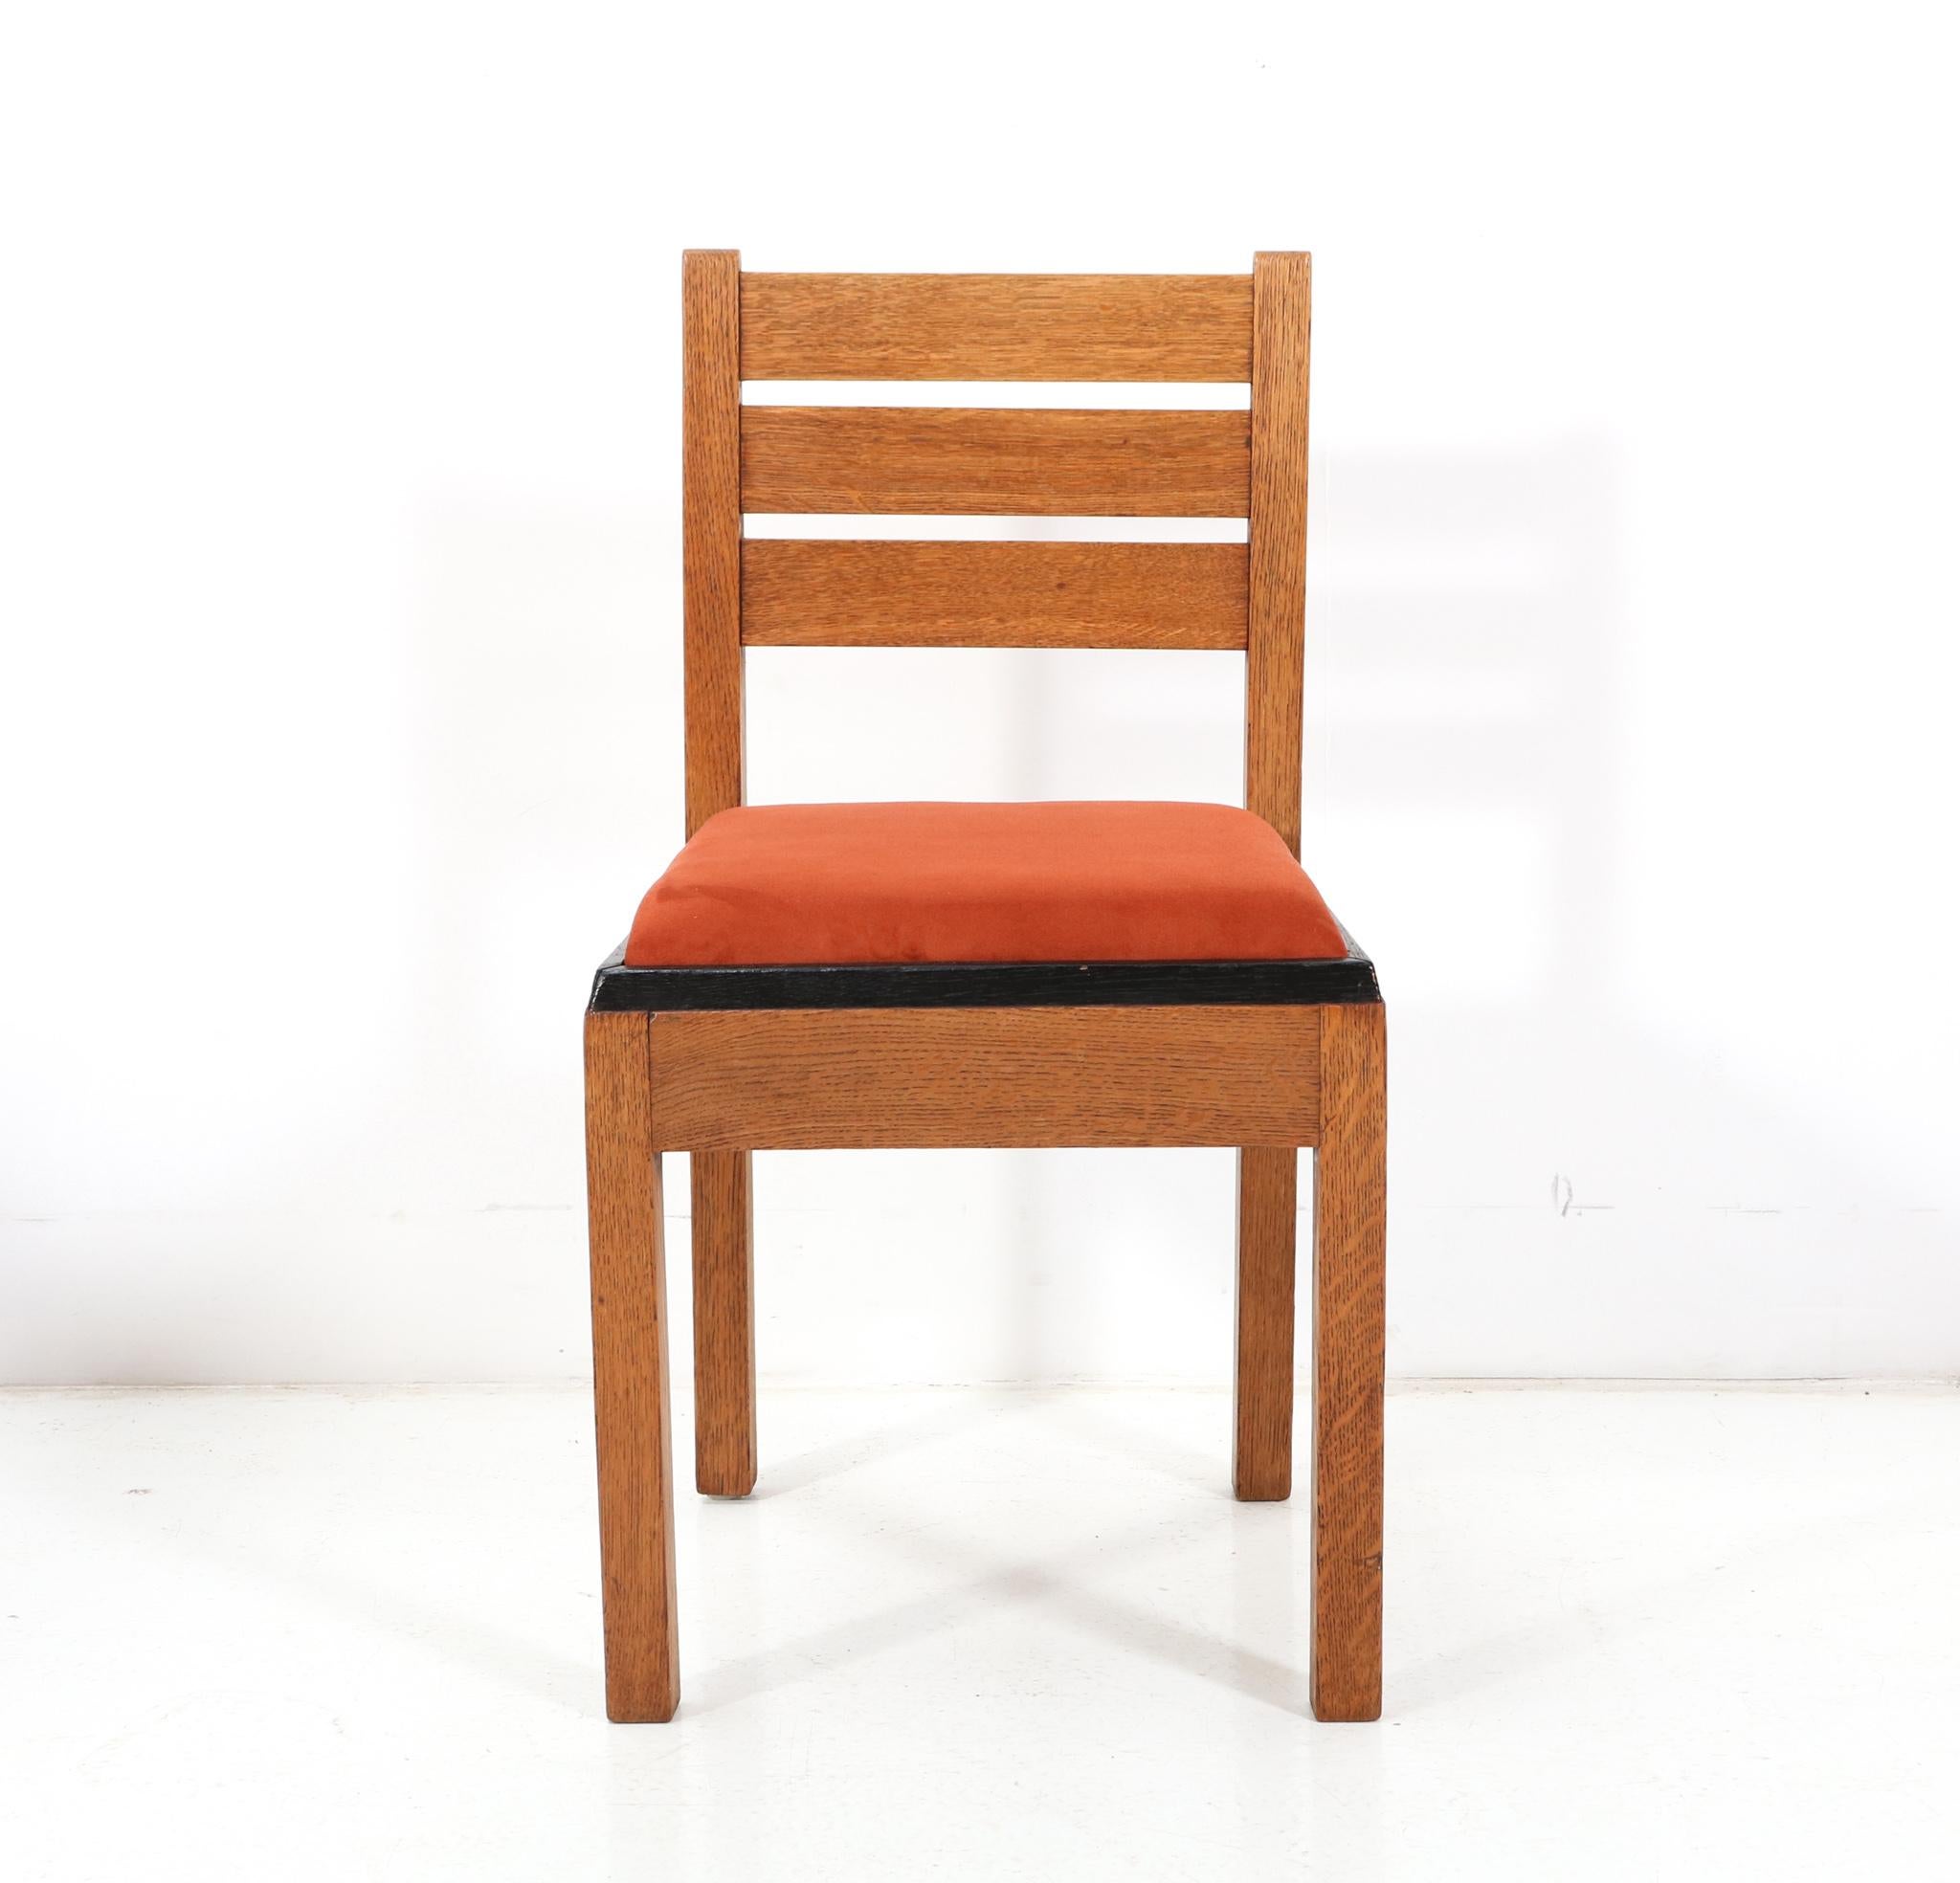 Prächtiger und äußerst seltener Art Deco Modernist Beistellstuhl.
Design/One von Jan Brunott.
Auffälliges niederländisches Design aus den 1920er Jahren.
Massiver Eichenholzrahmen mit schwarz lackierter Originalverkleidung.
Der Sitz wurde mit